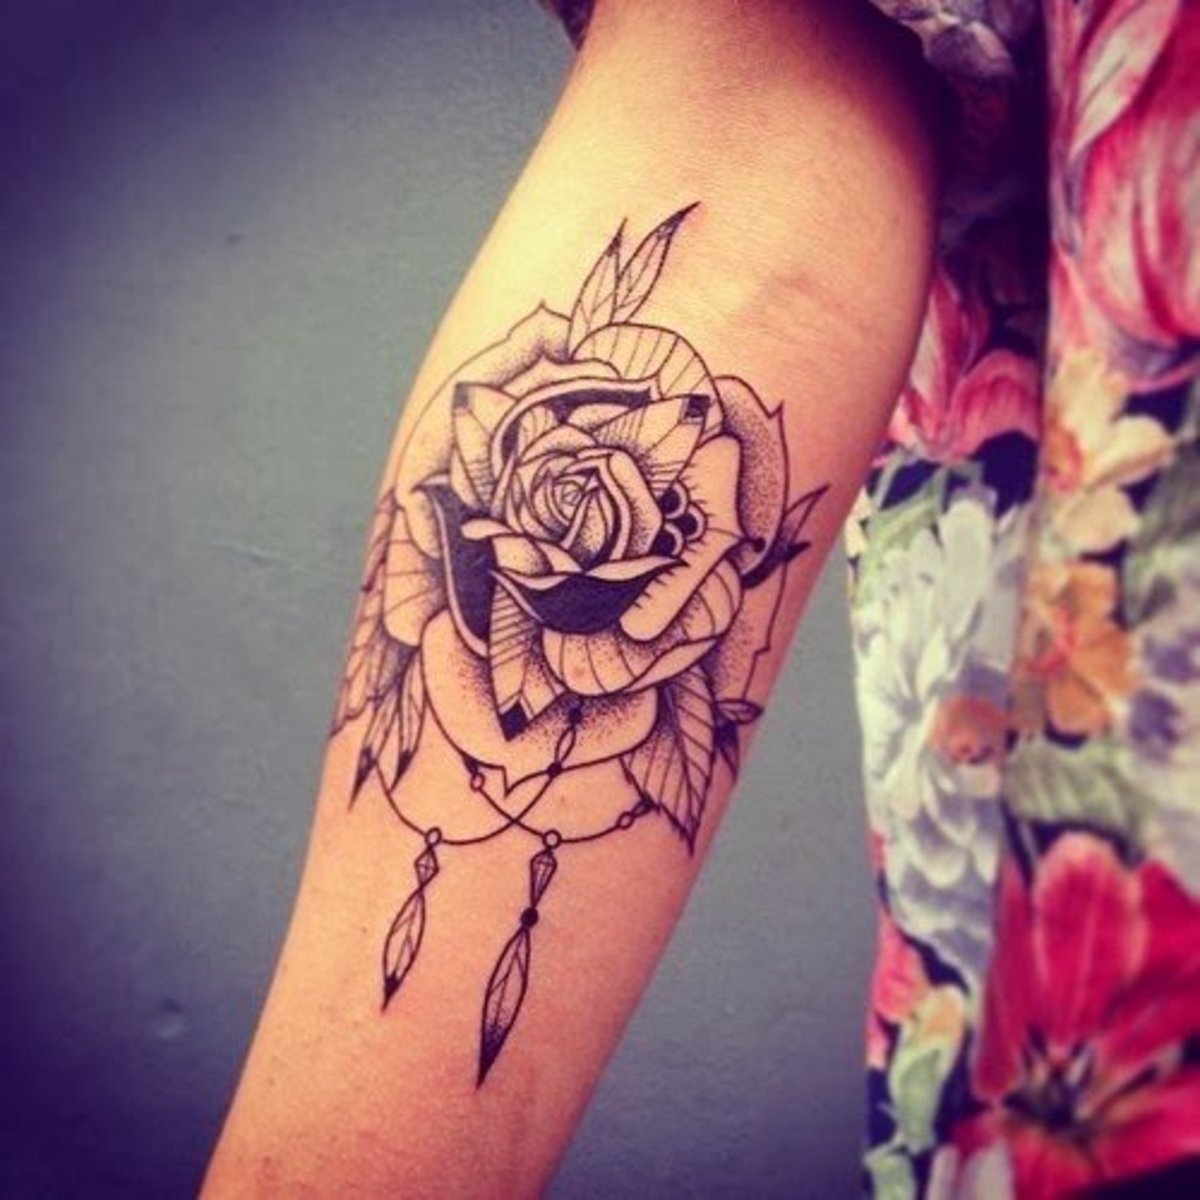 Flower Tattoo Ideas - TatRing